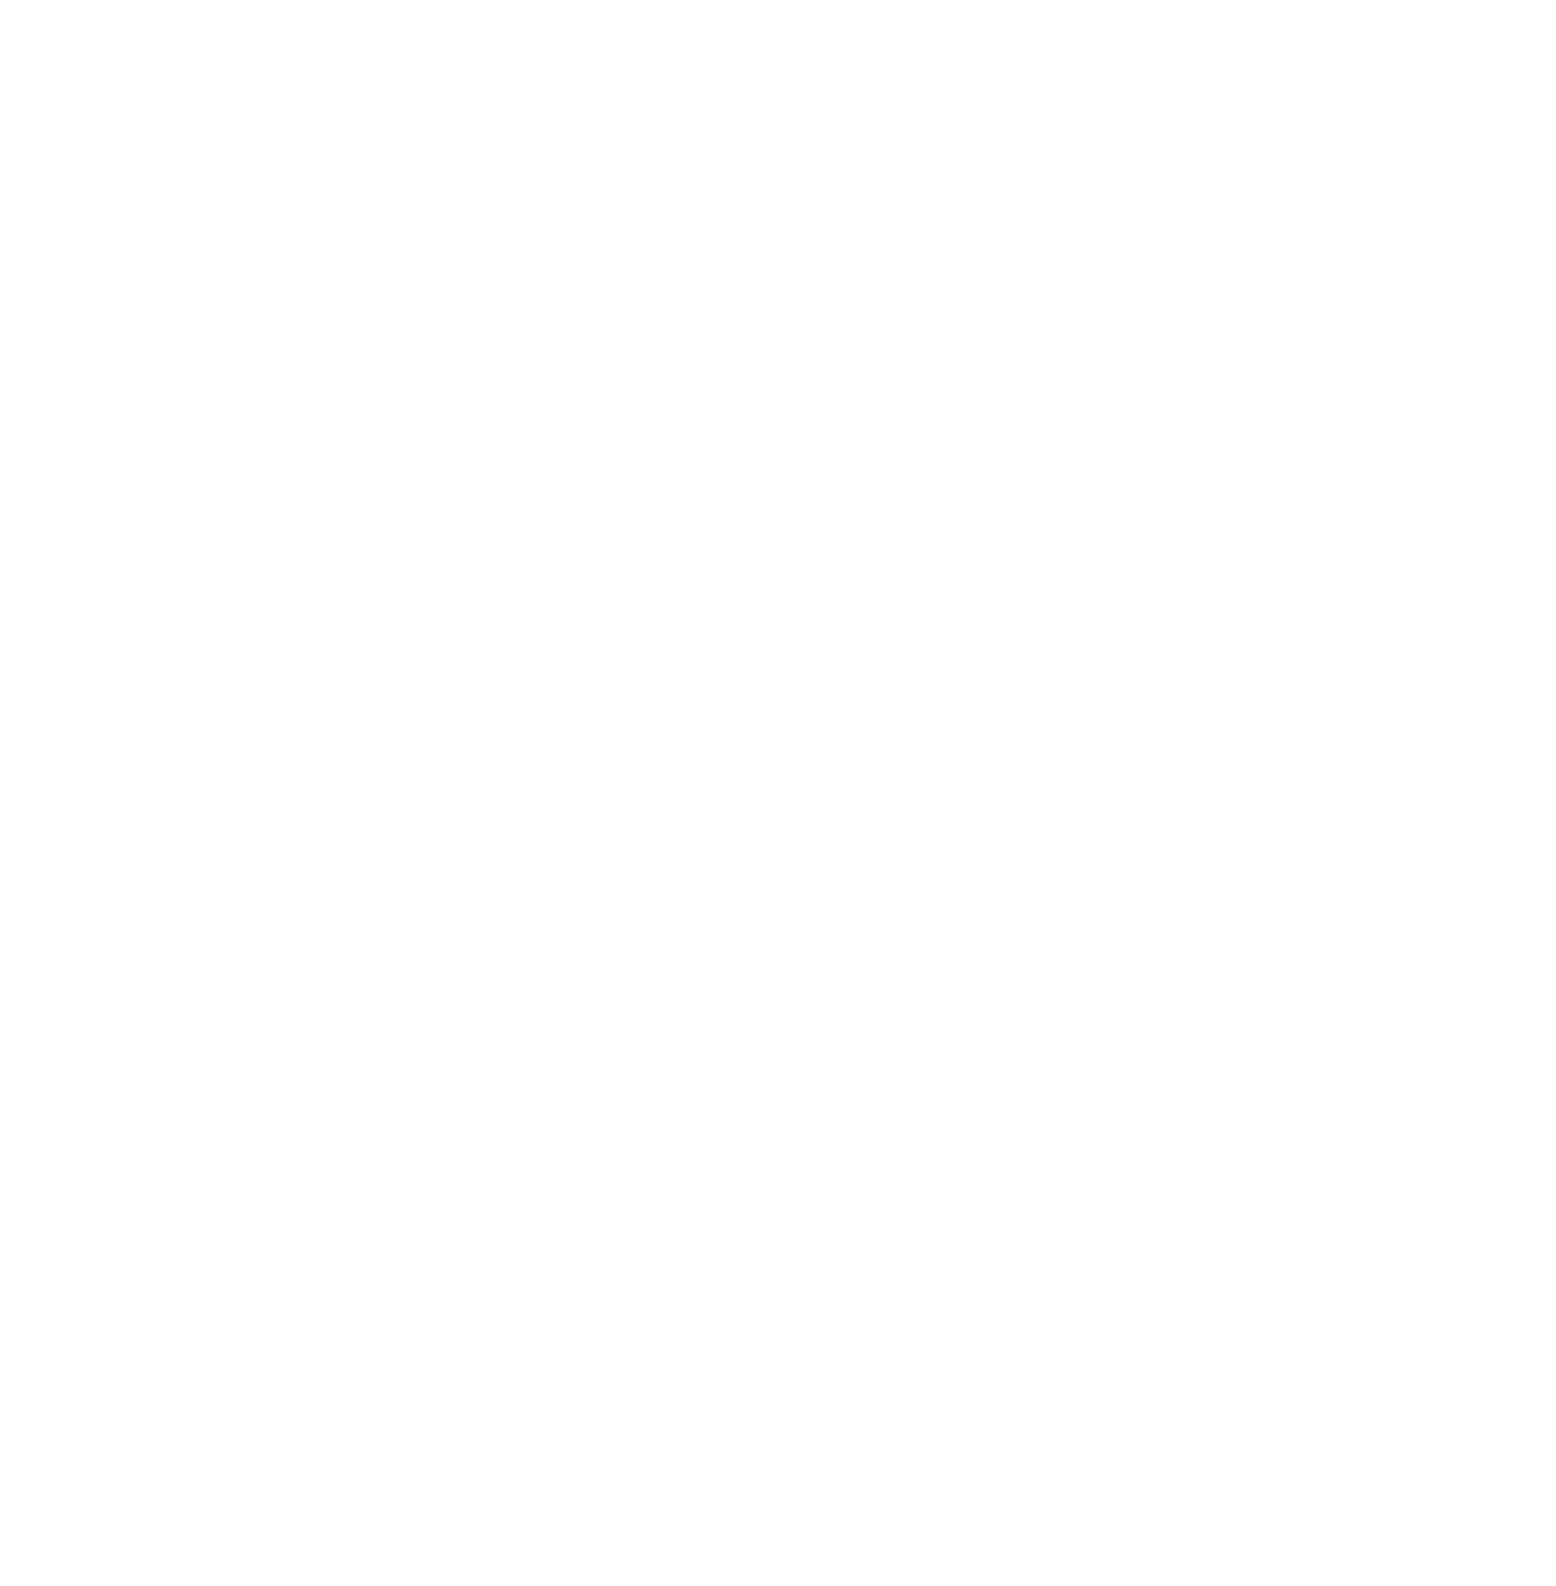 Lucas GC logo pour fonds sombres (PNG transparent)